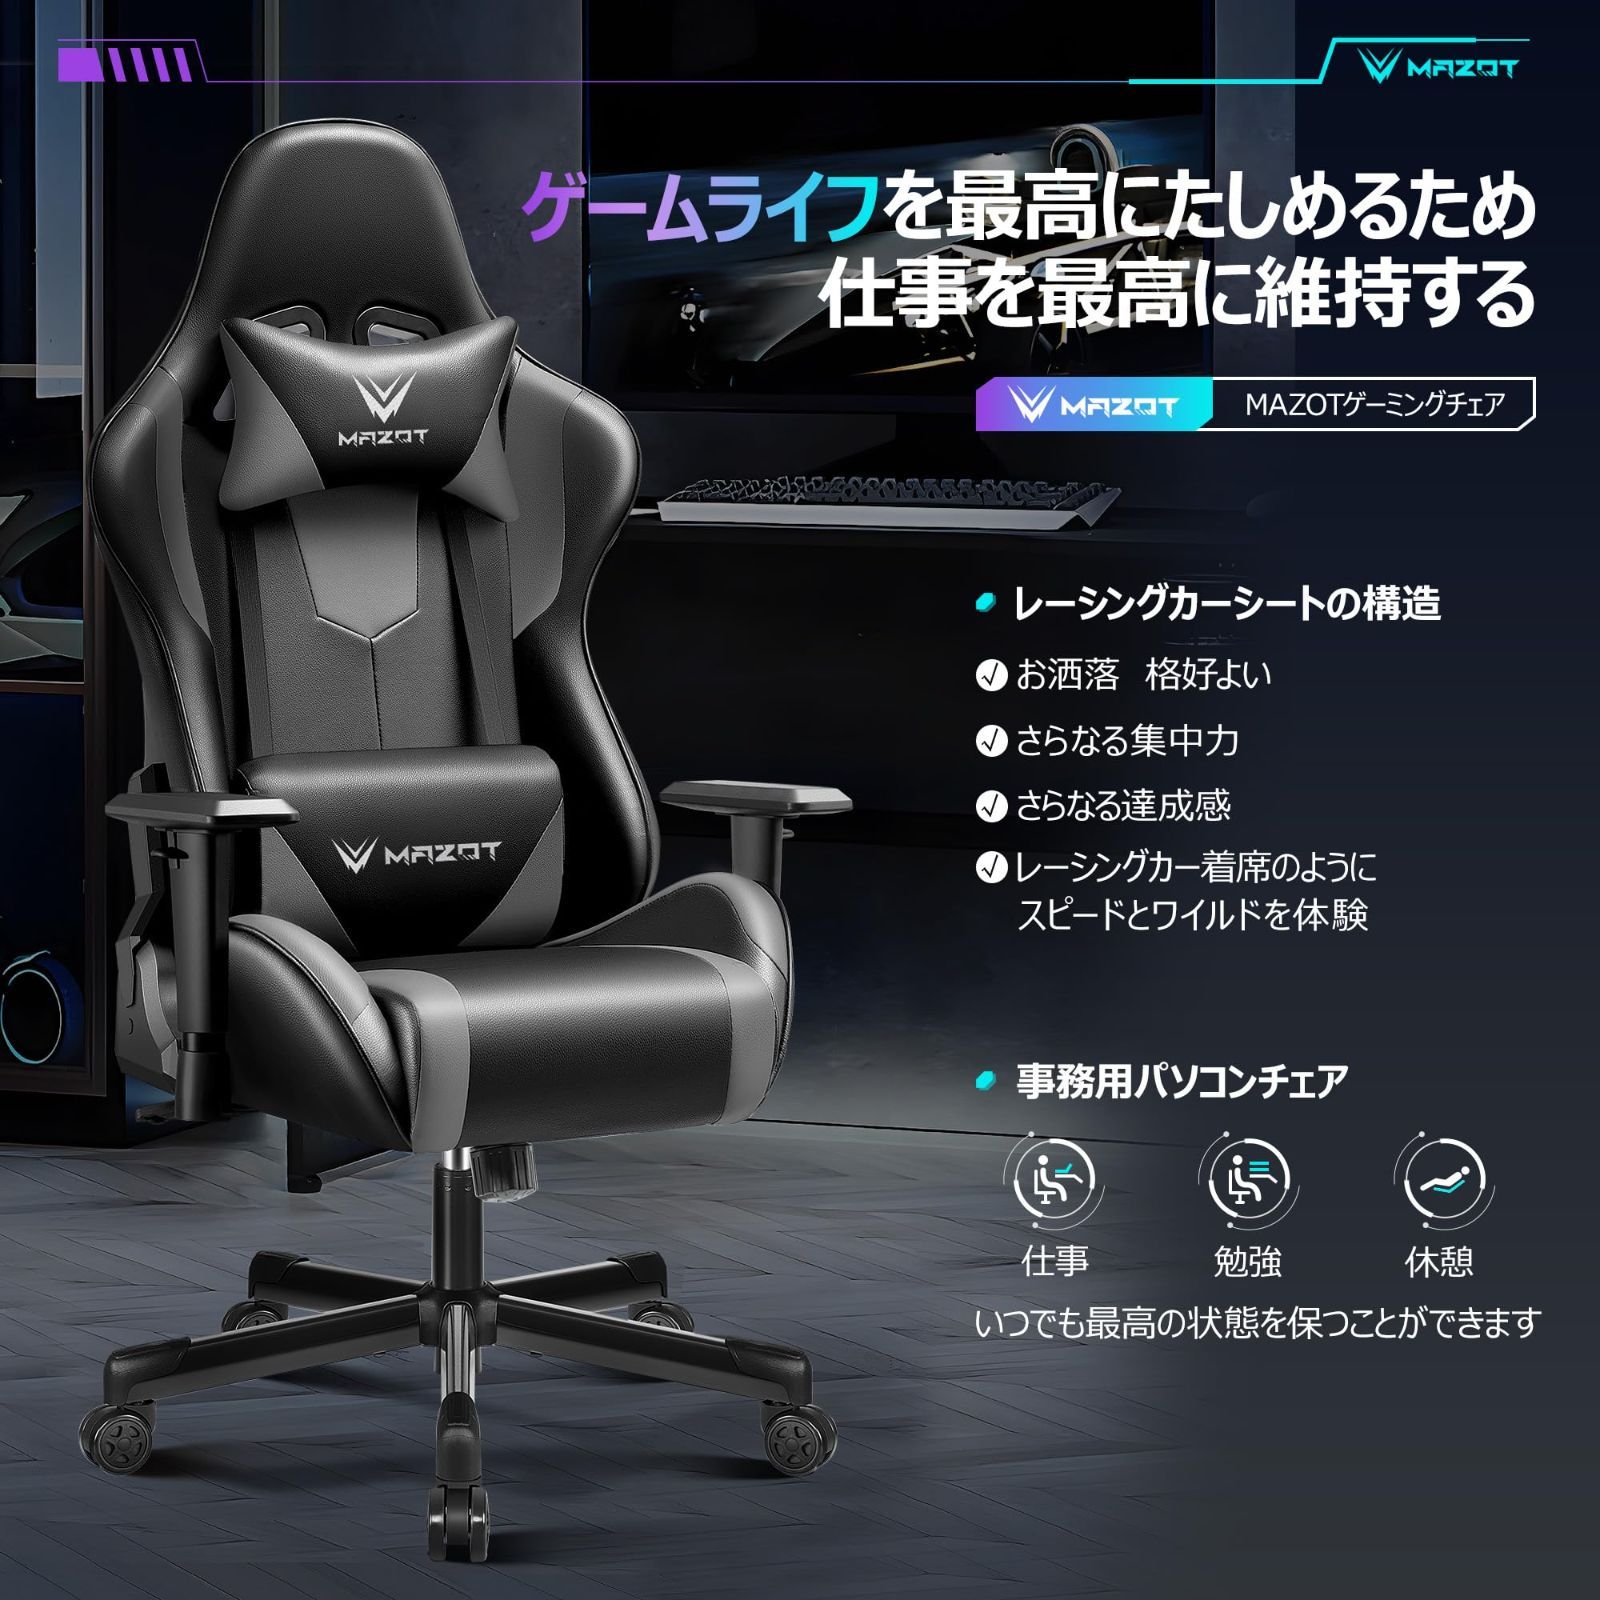 MAZOT ゲーミングチェア 椅子 オフィス デスクチェア ゲーミング イス ゲーム用 リクライニング パソコンチェア ハイバック ヘッドレスト  ランバーサポート 疲れない椅子 ひじ掛け付き 高さ調整機能 ゲーミングチェア 黒 灰 ブラック×グレー